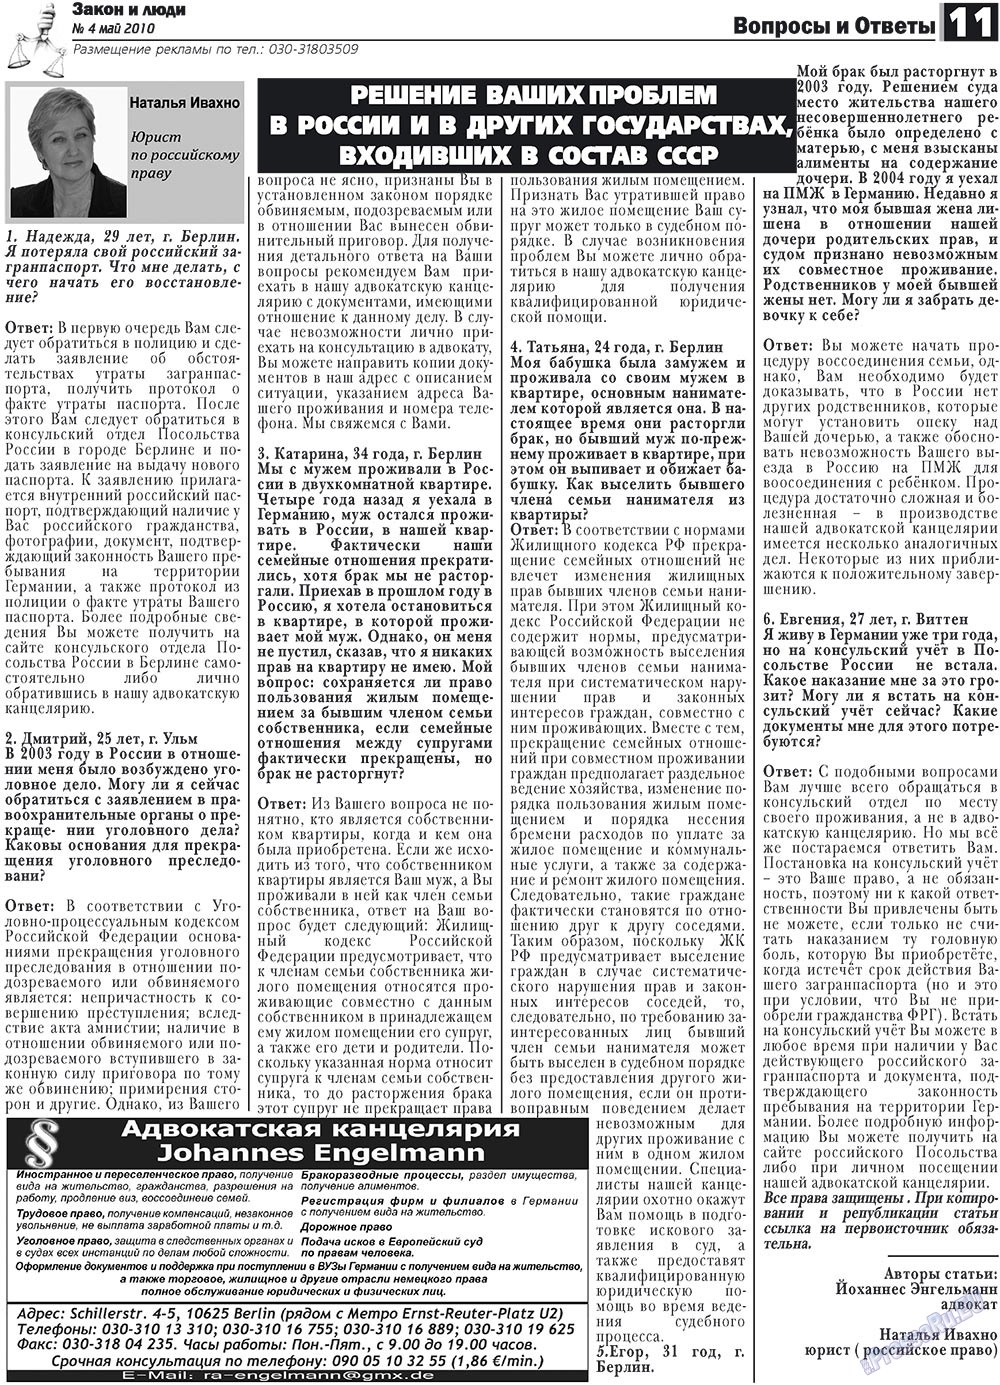 Закон и люди, газета. 2010 №4 стр.11